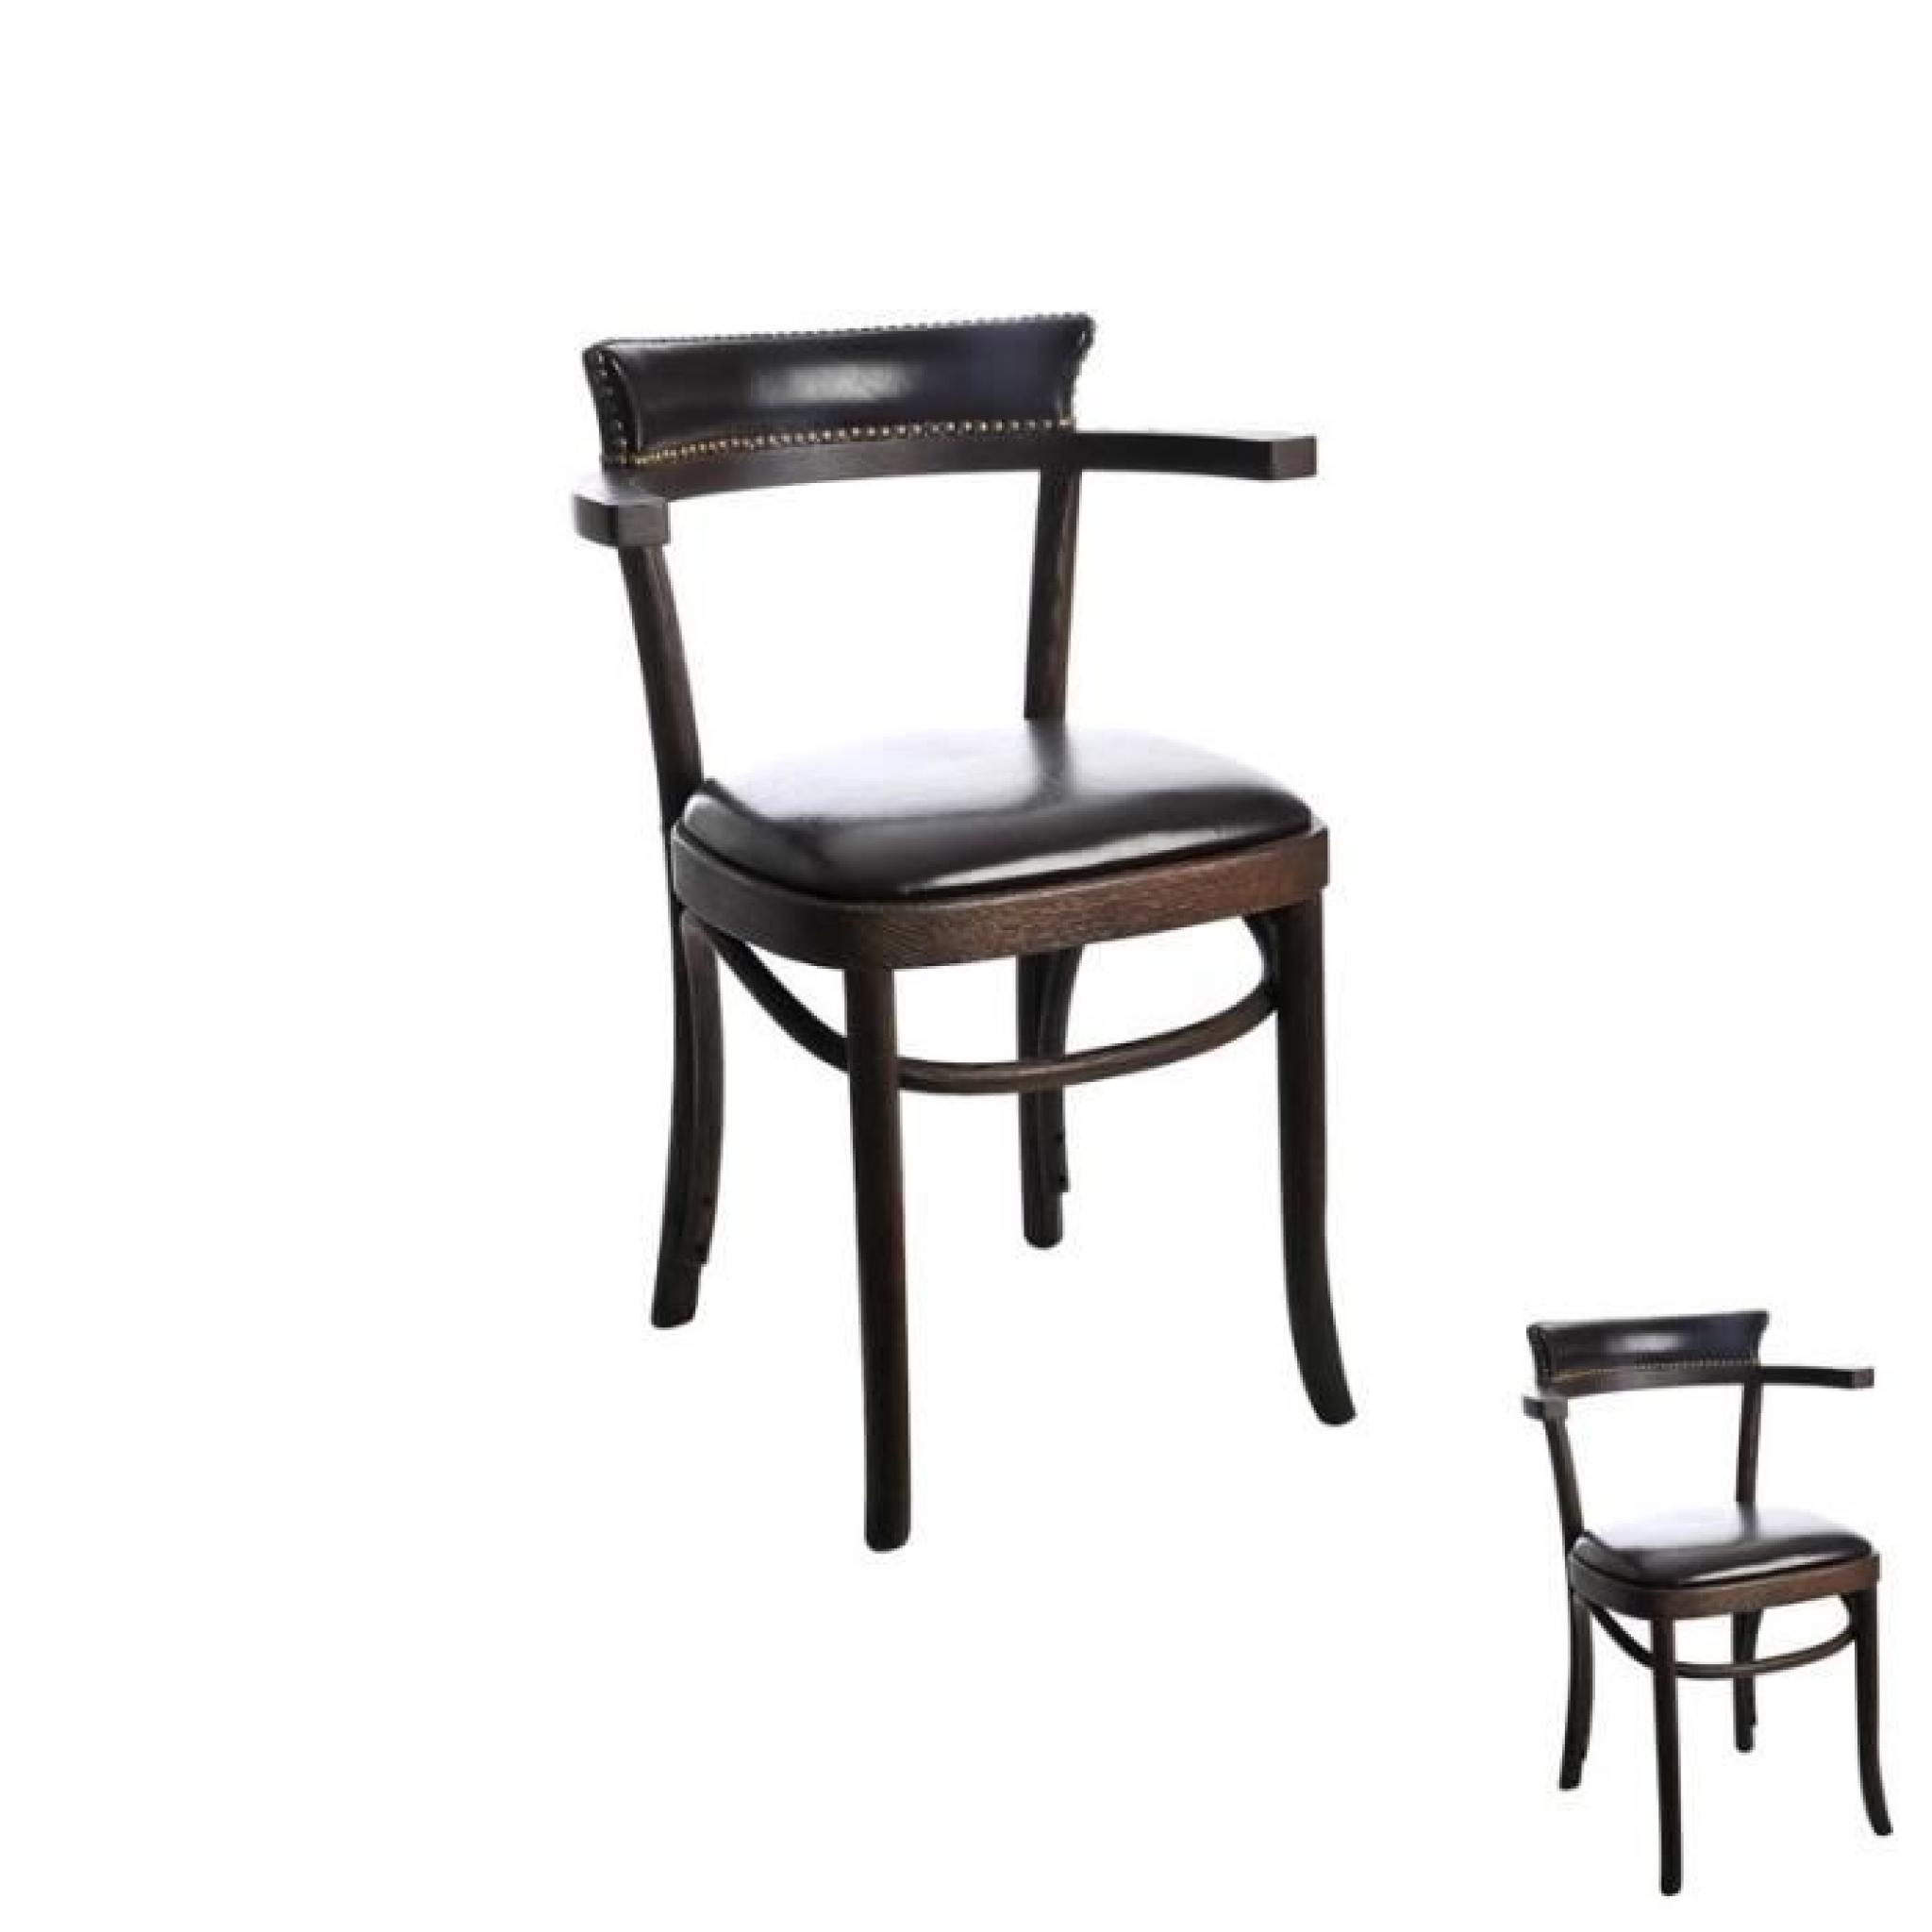 Duo de chaises bois Brun - EMILE  - Taille : L 57 x l 42 x H 77 - Couleur marketing : Marron